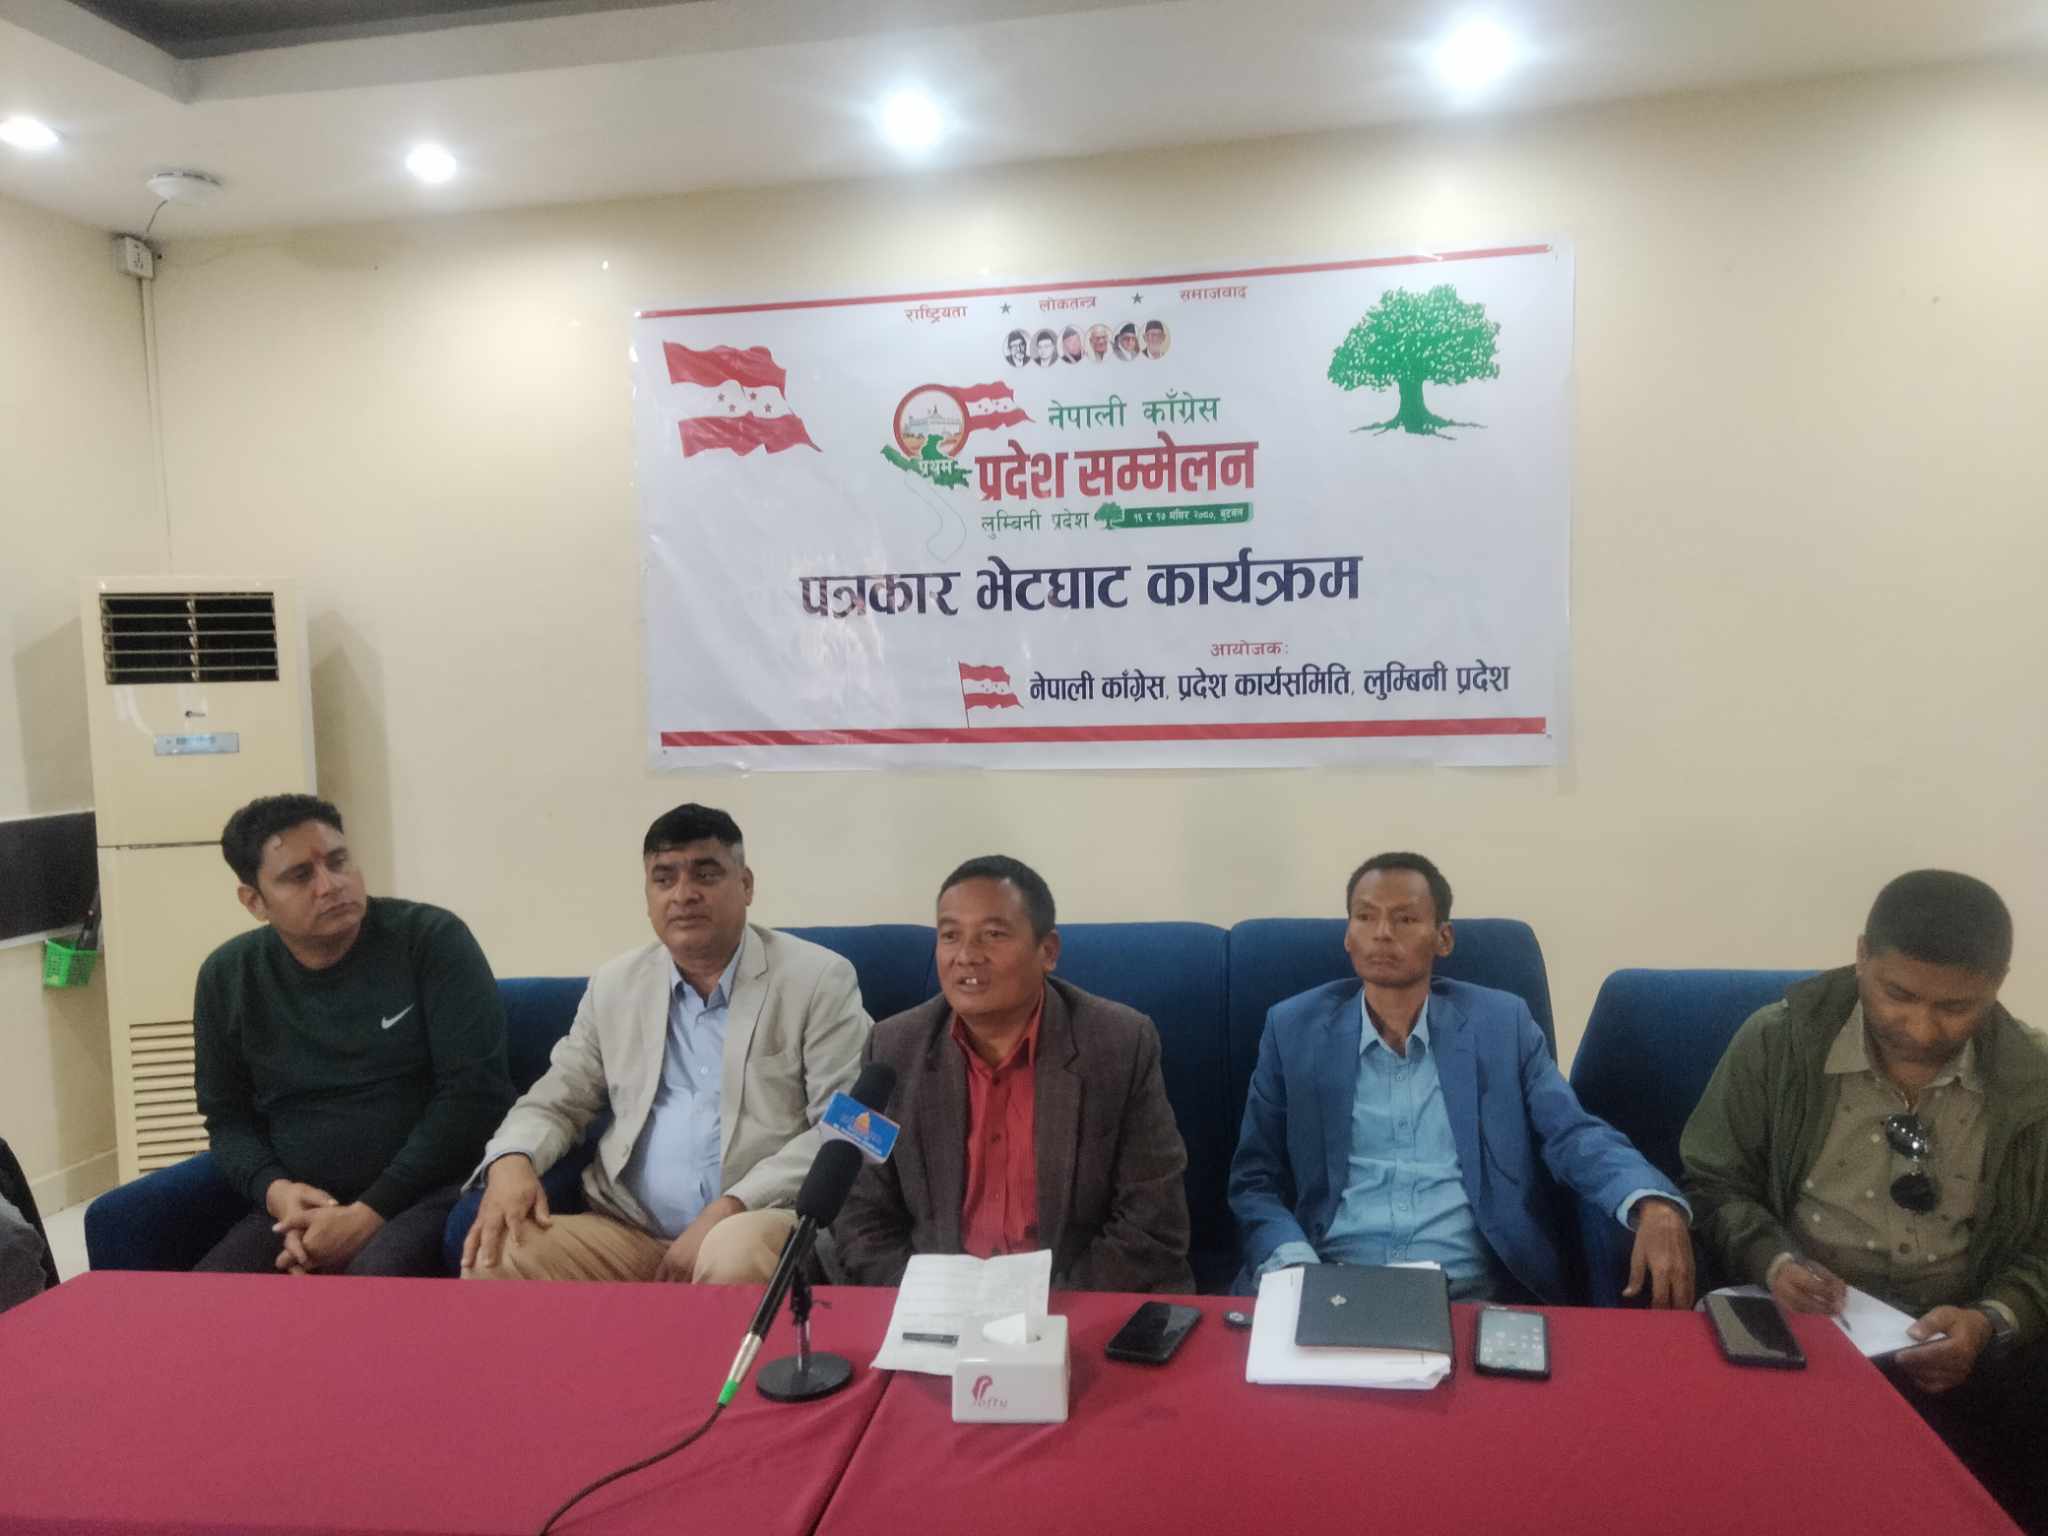 कांग्रेस लुम्बिनी प्रथम सम्मेलन : पार्टीलाई सही दिशानिर्देश गर्न गहन छलफल हुने